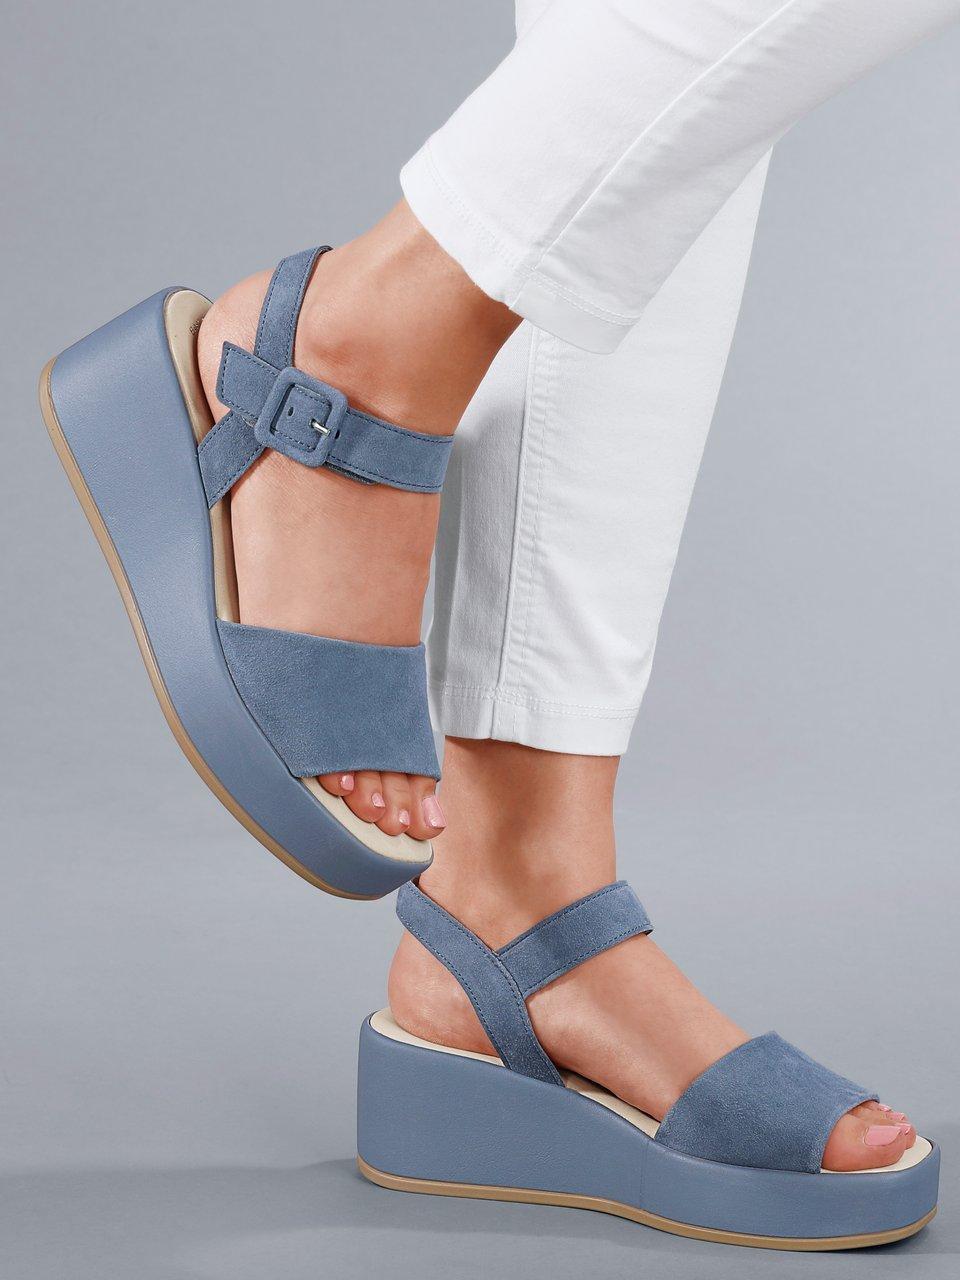 Blåe Damer sandaler hos Hahn